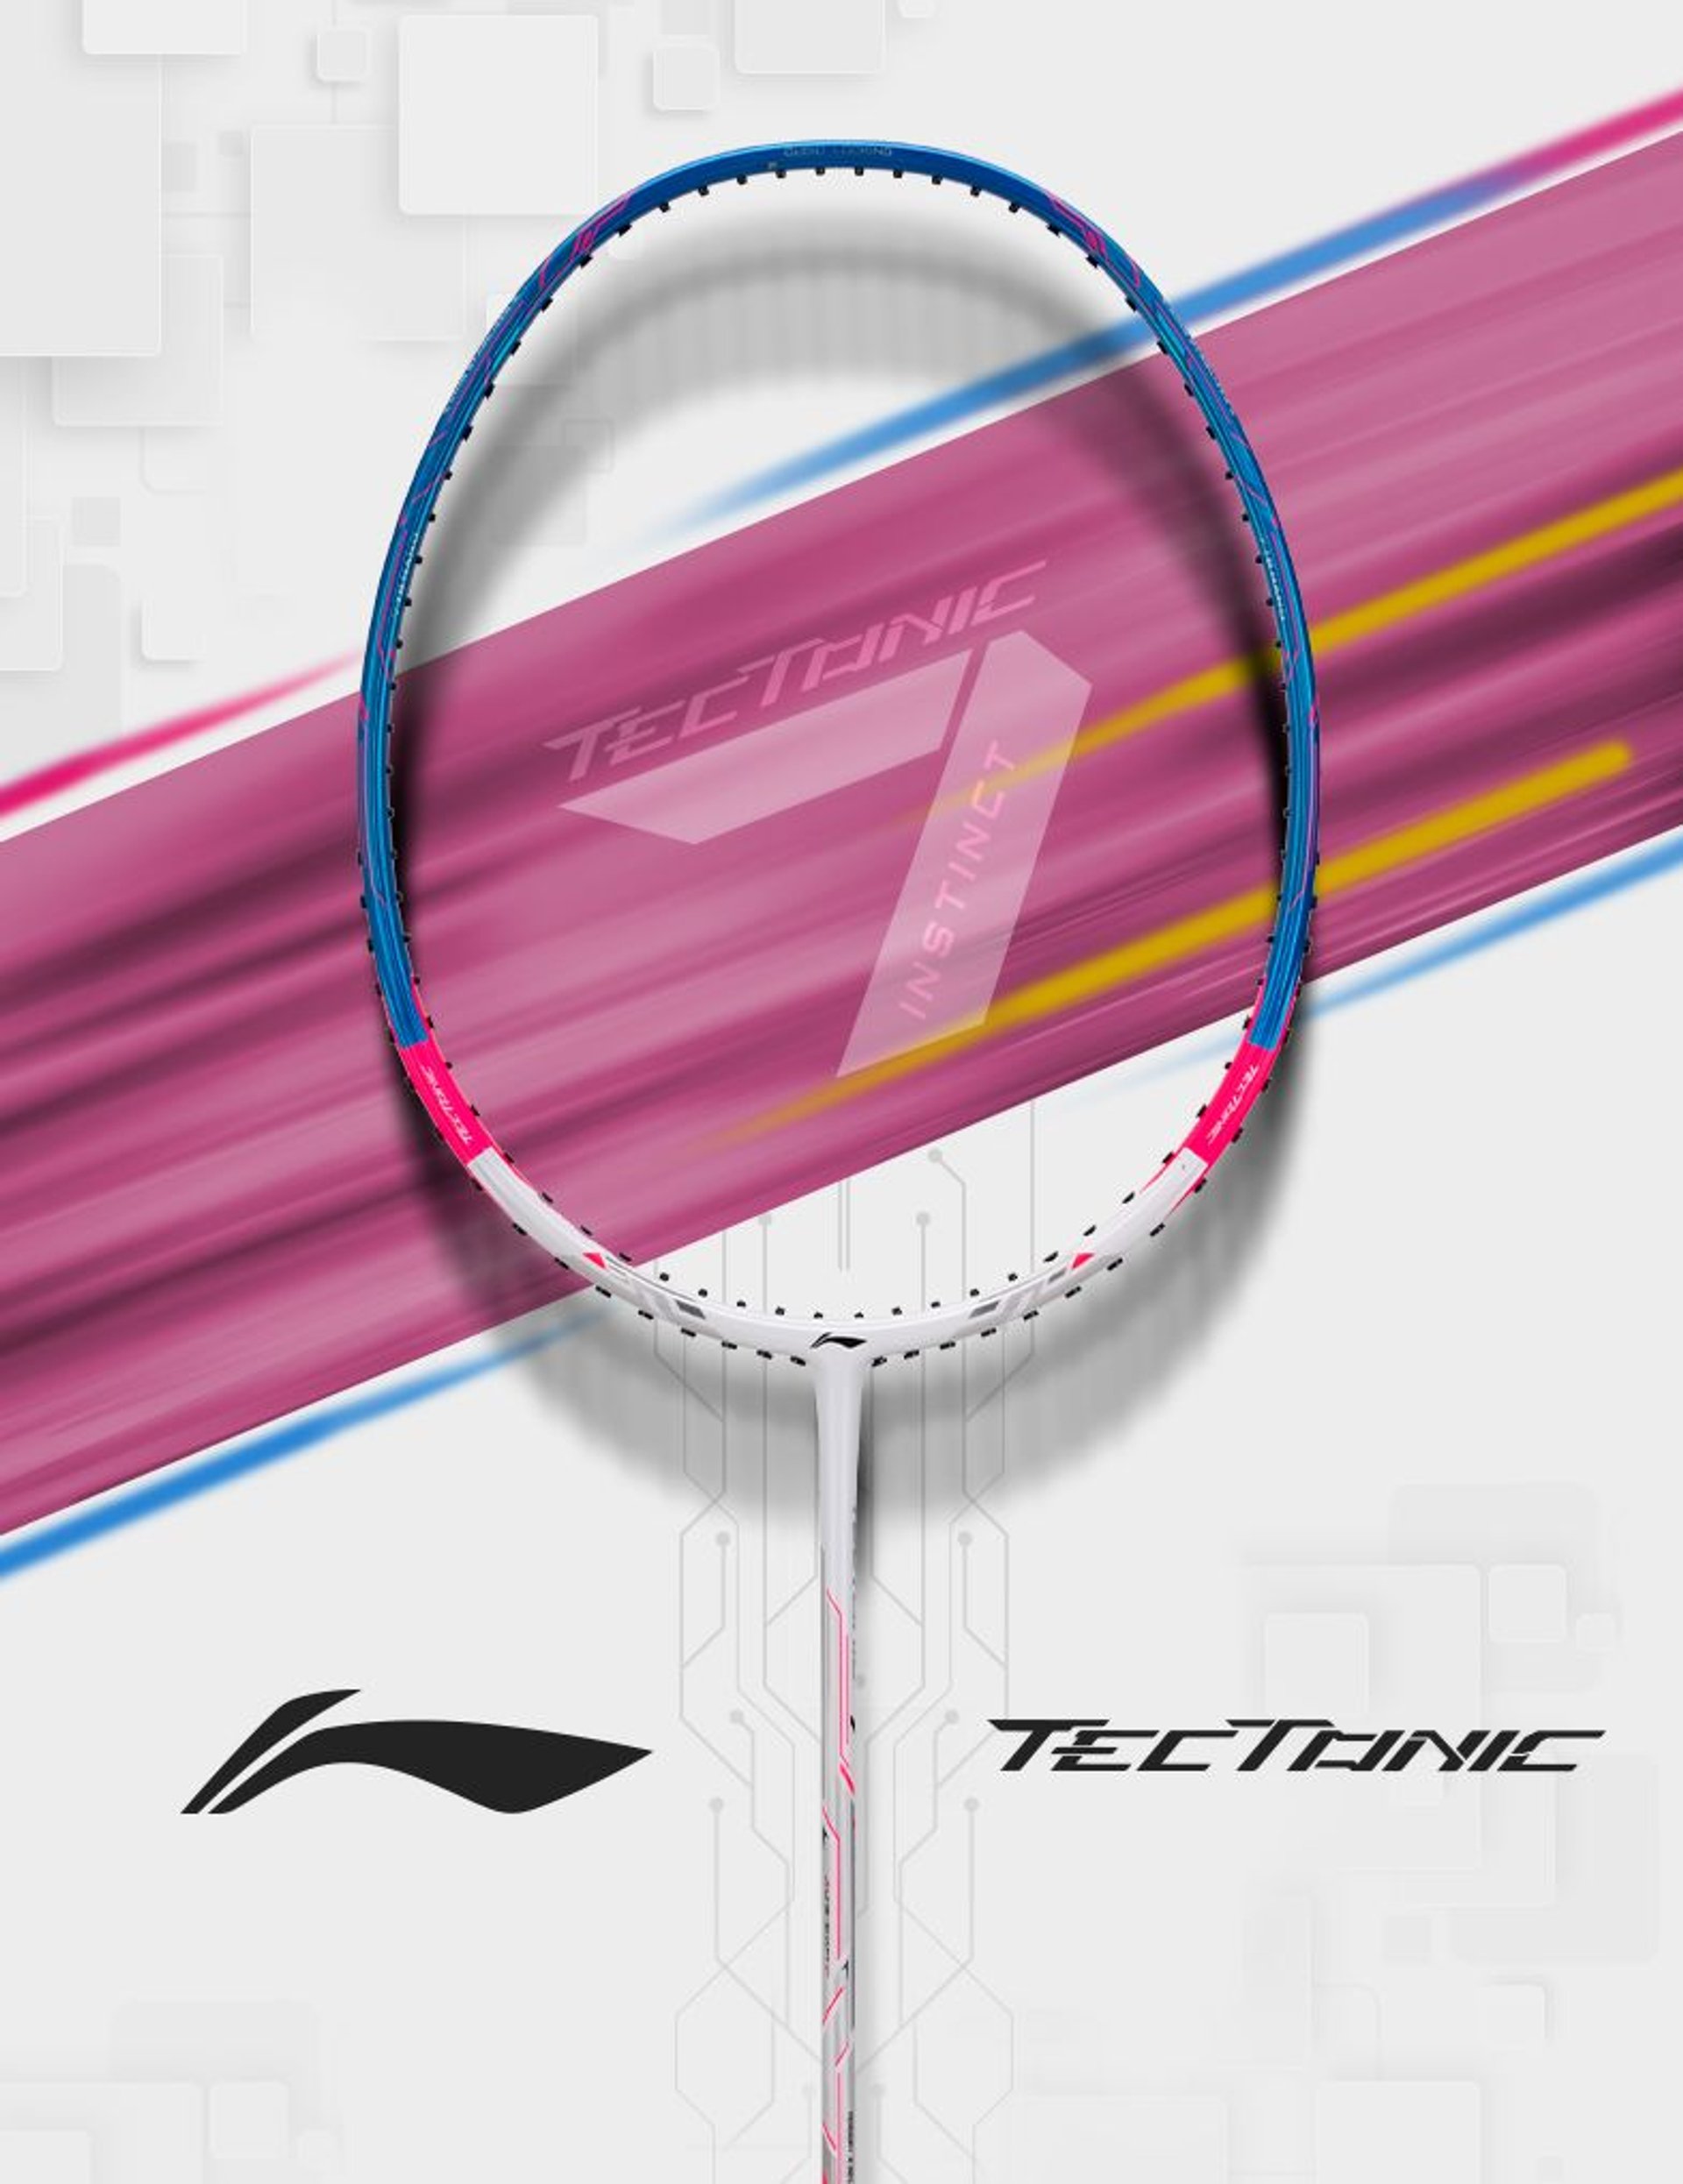 Li-Ning Tectonic Badminton Racket Collections